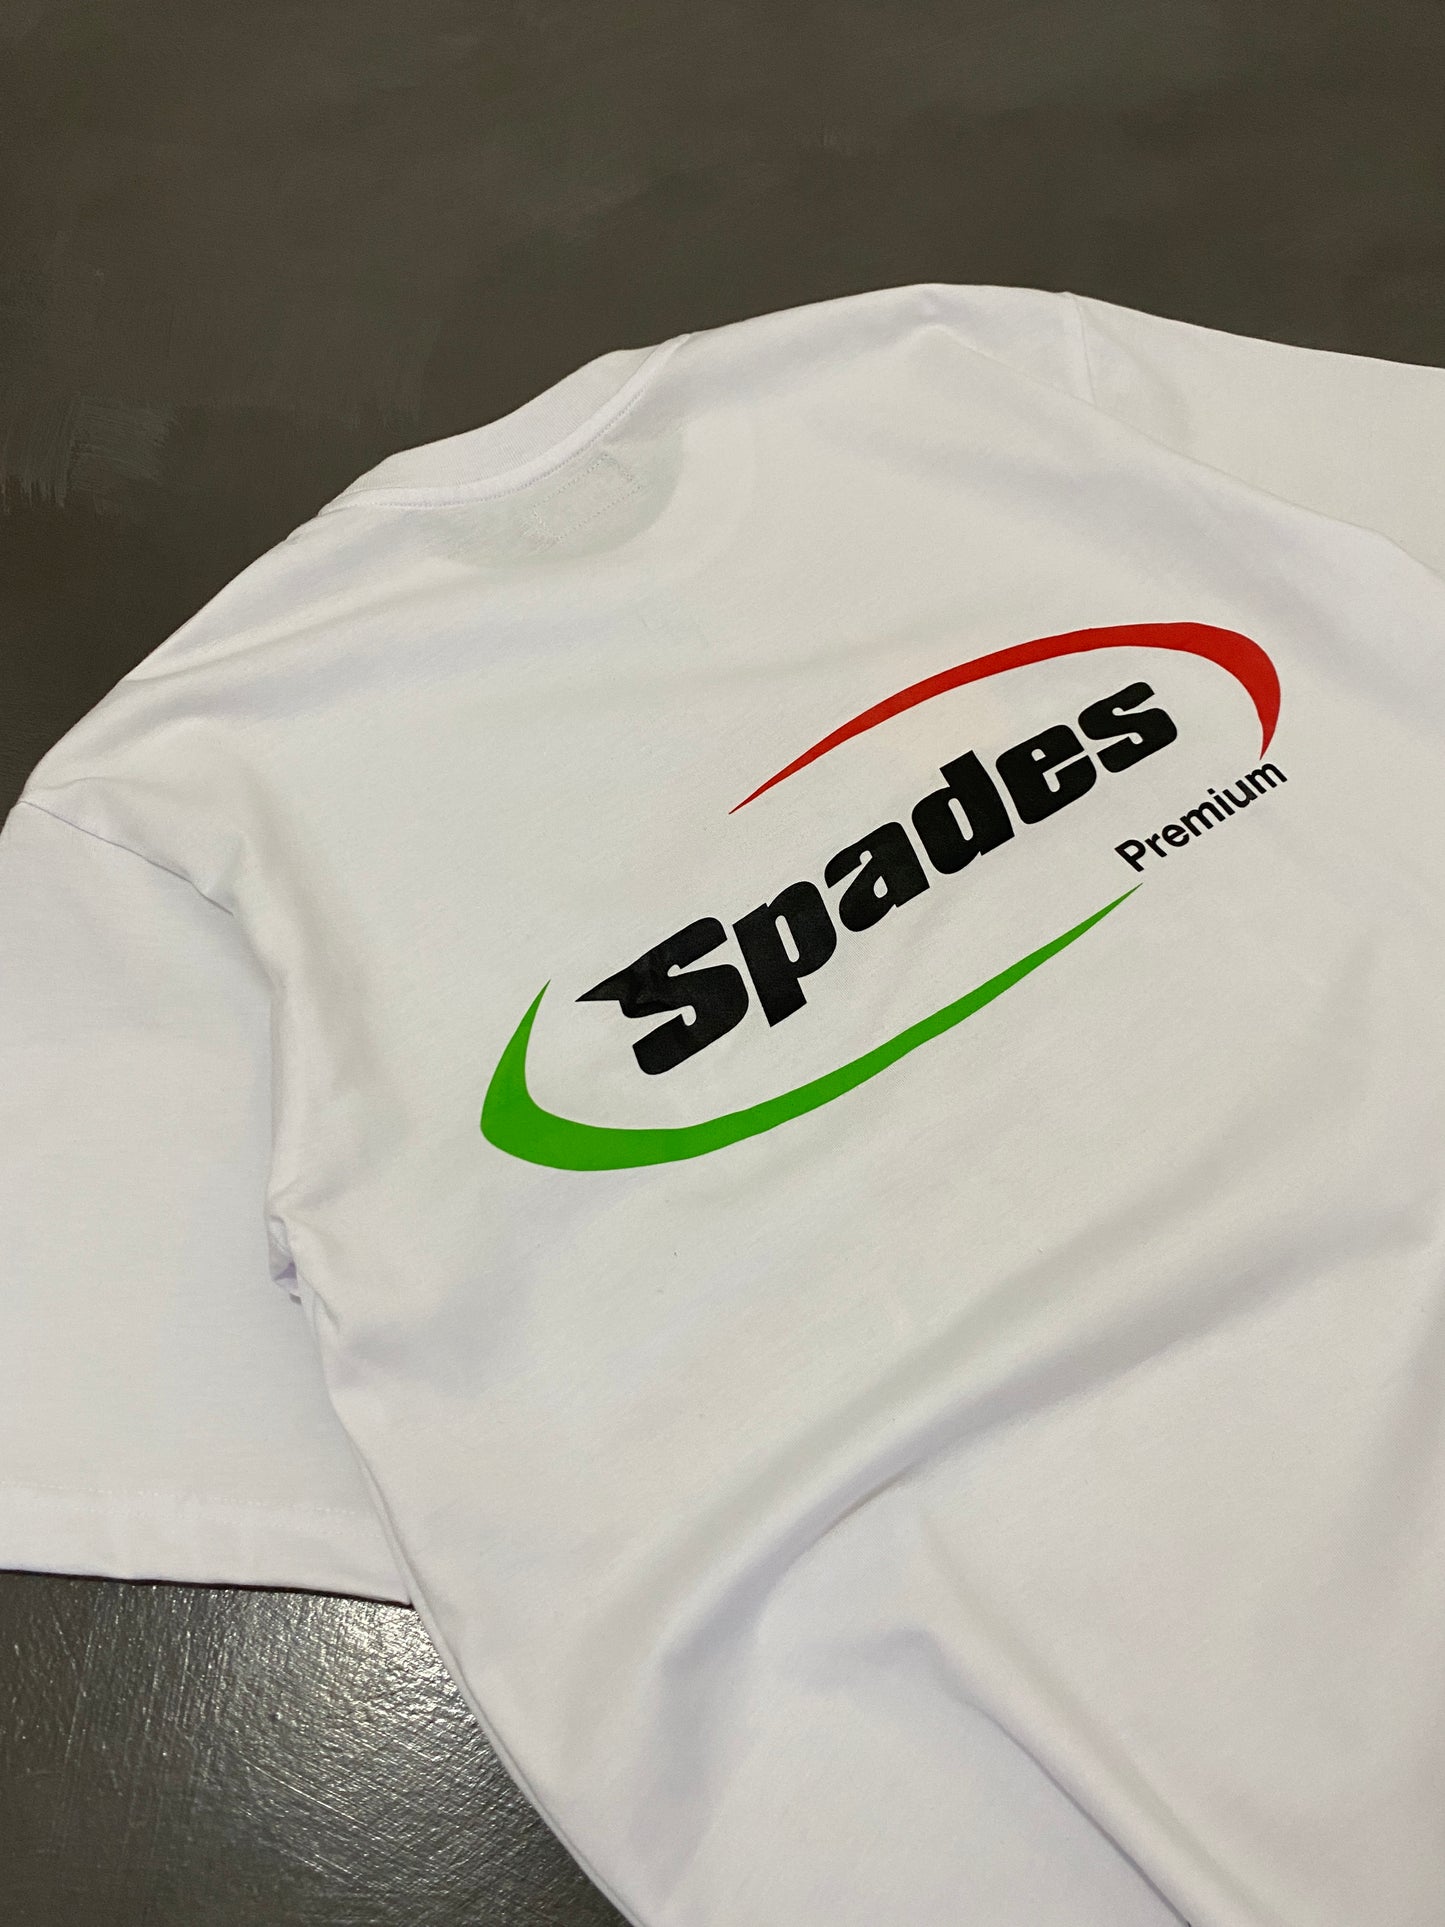 Spades Premium White T-shirt